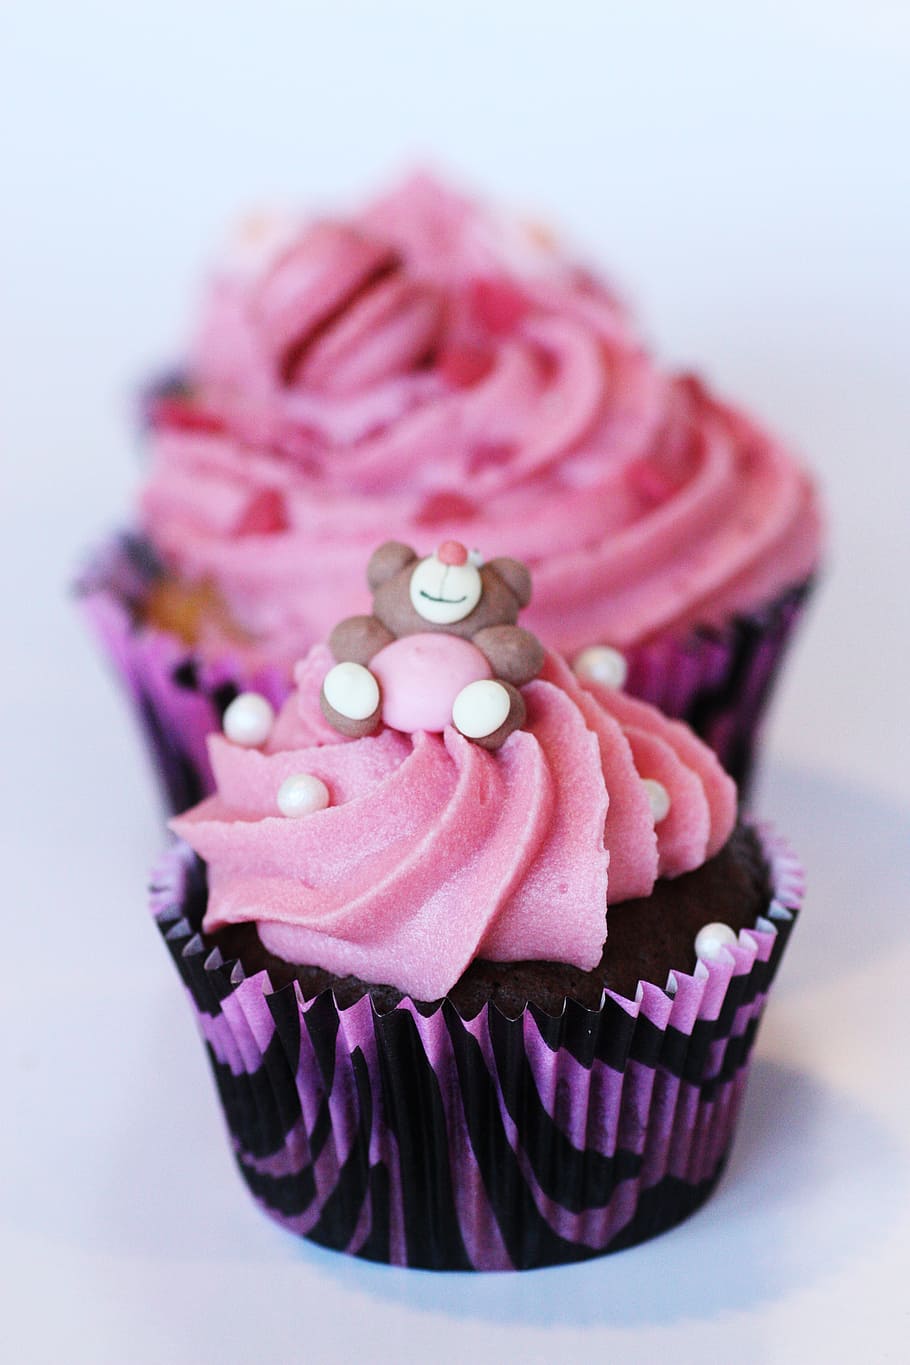 fotografi selektif, fokus, pink, hitam, cupcake, muffin, dekorasi kue, krim, lapisan gula, hiasan